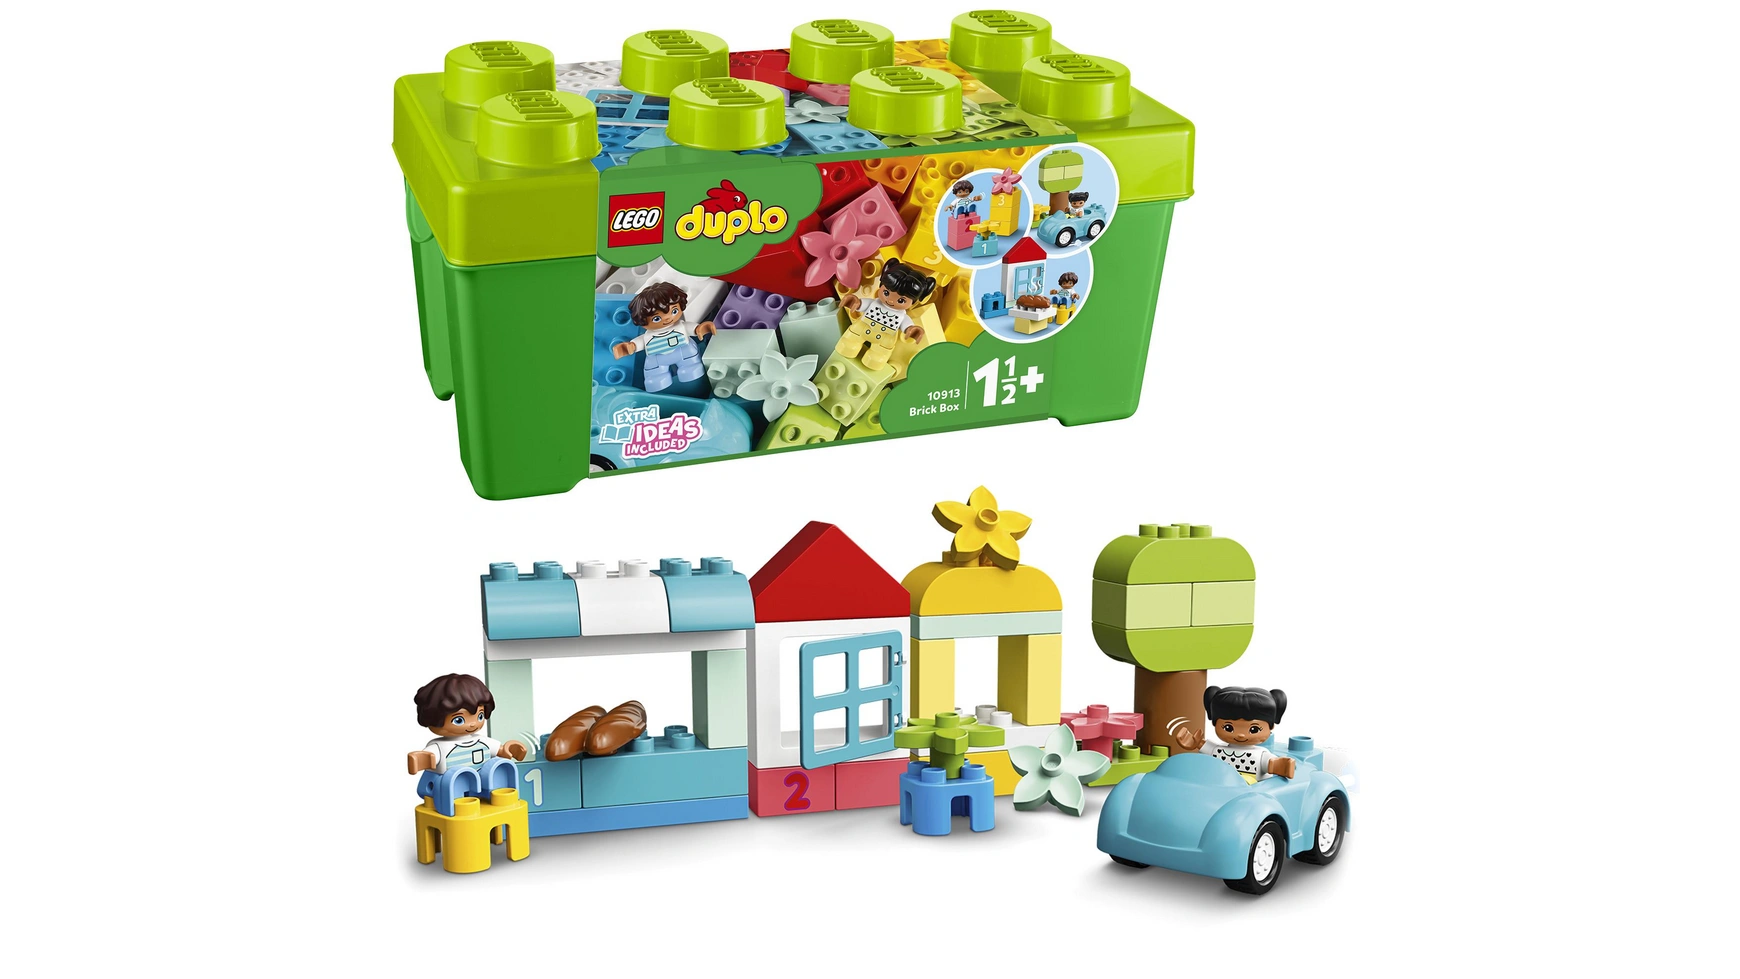 Lego DUPLO Classic Кирпичная коробка, креативная шкатулка, игрушка от 1,5 лет